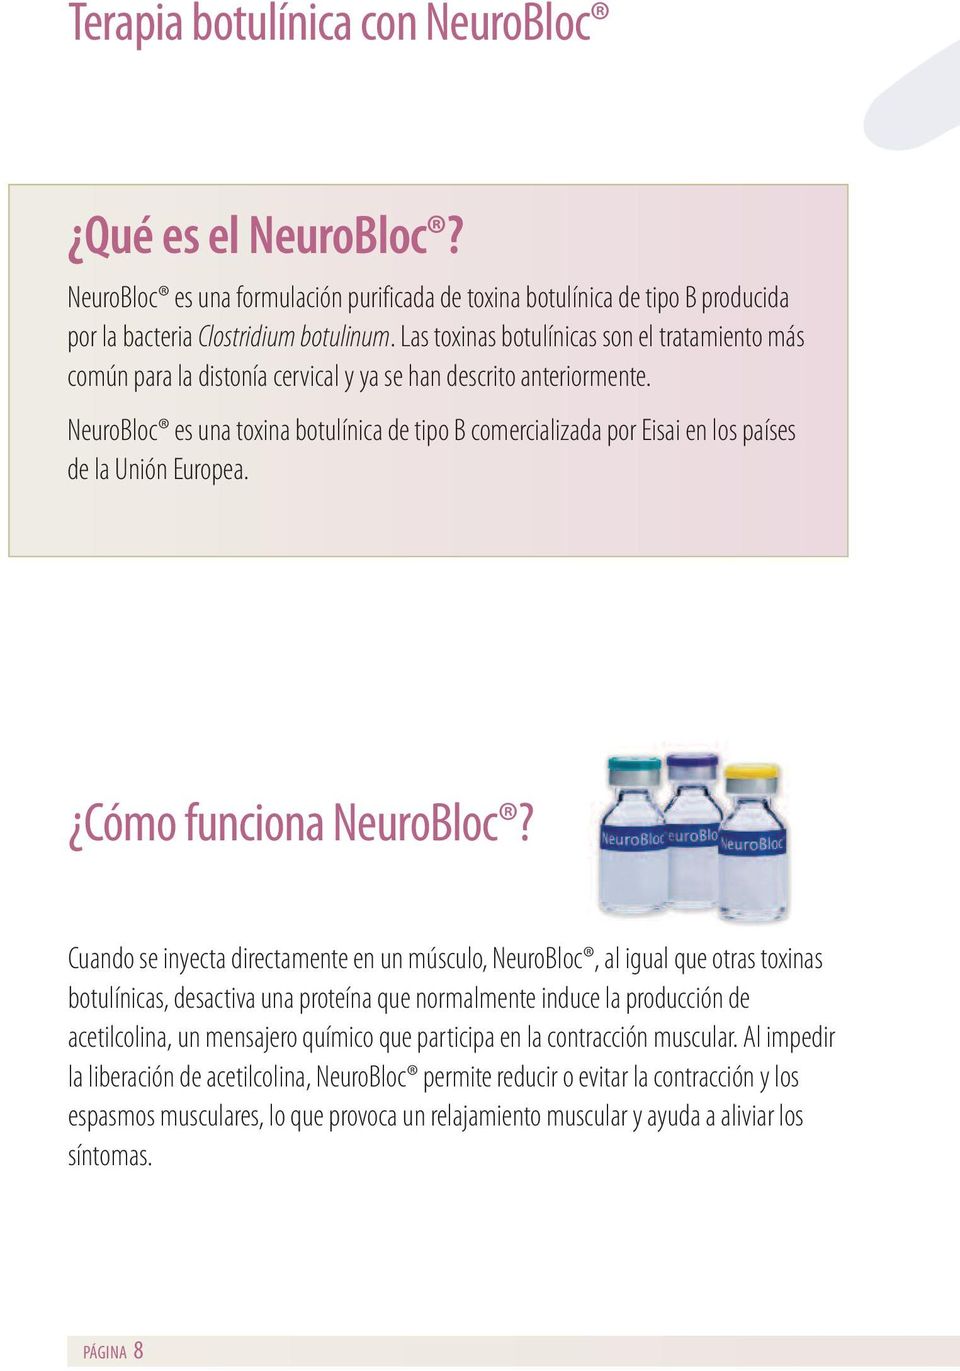 NeuroBloc es una toxina botulínica de tipo B comercializada por Eisai en los países de la Unión Europea. Cómo funciona NeuroBloc?